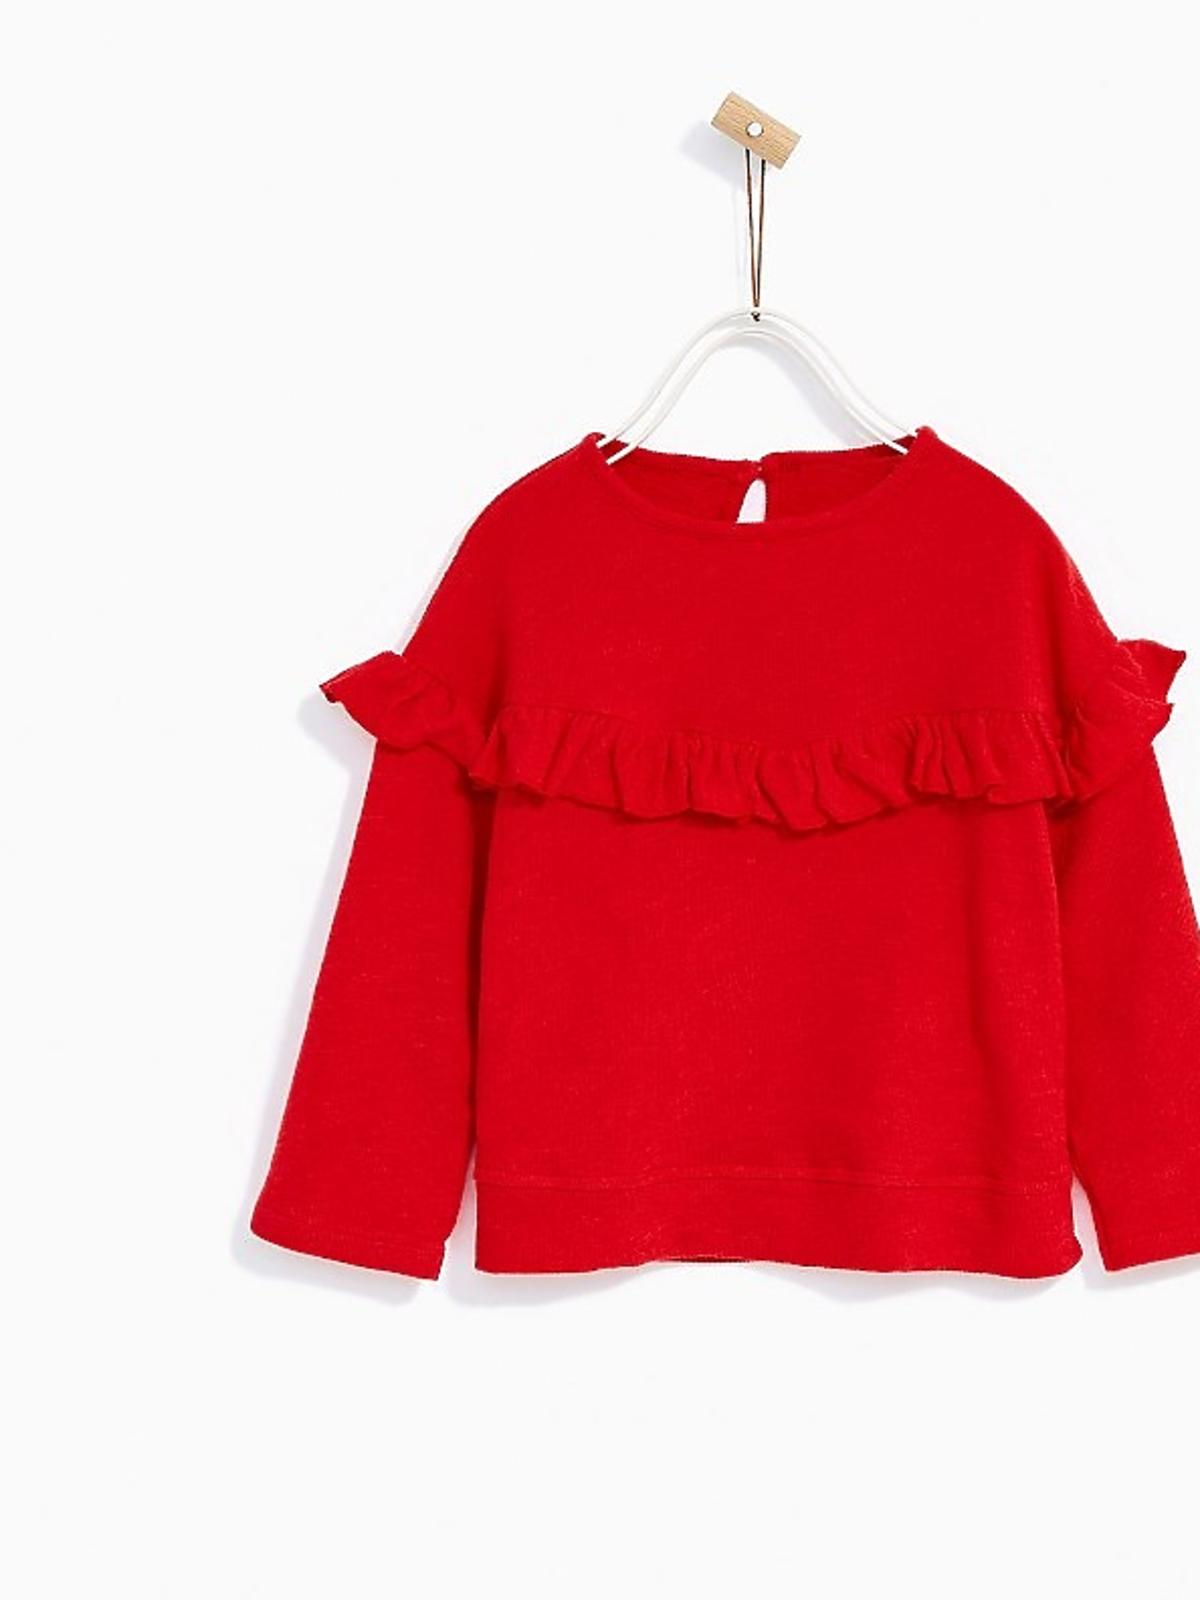 czerwona bluza dla małej dziewczynki z falbanką 29.90zł zara 45.90zł.jpg